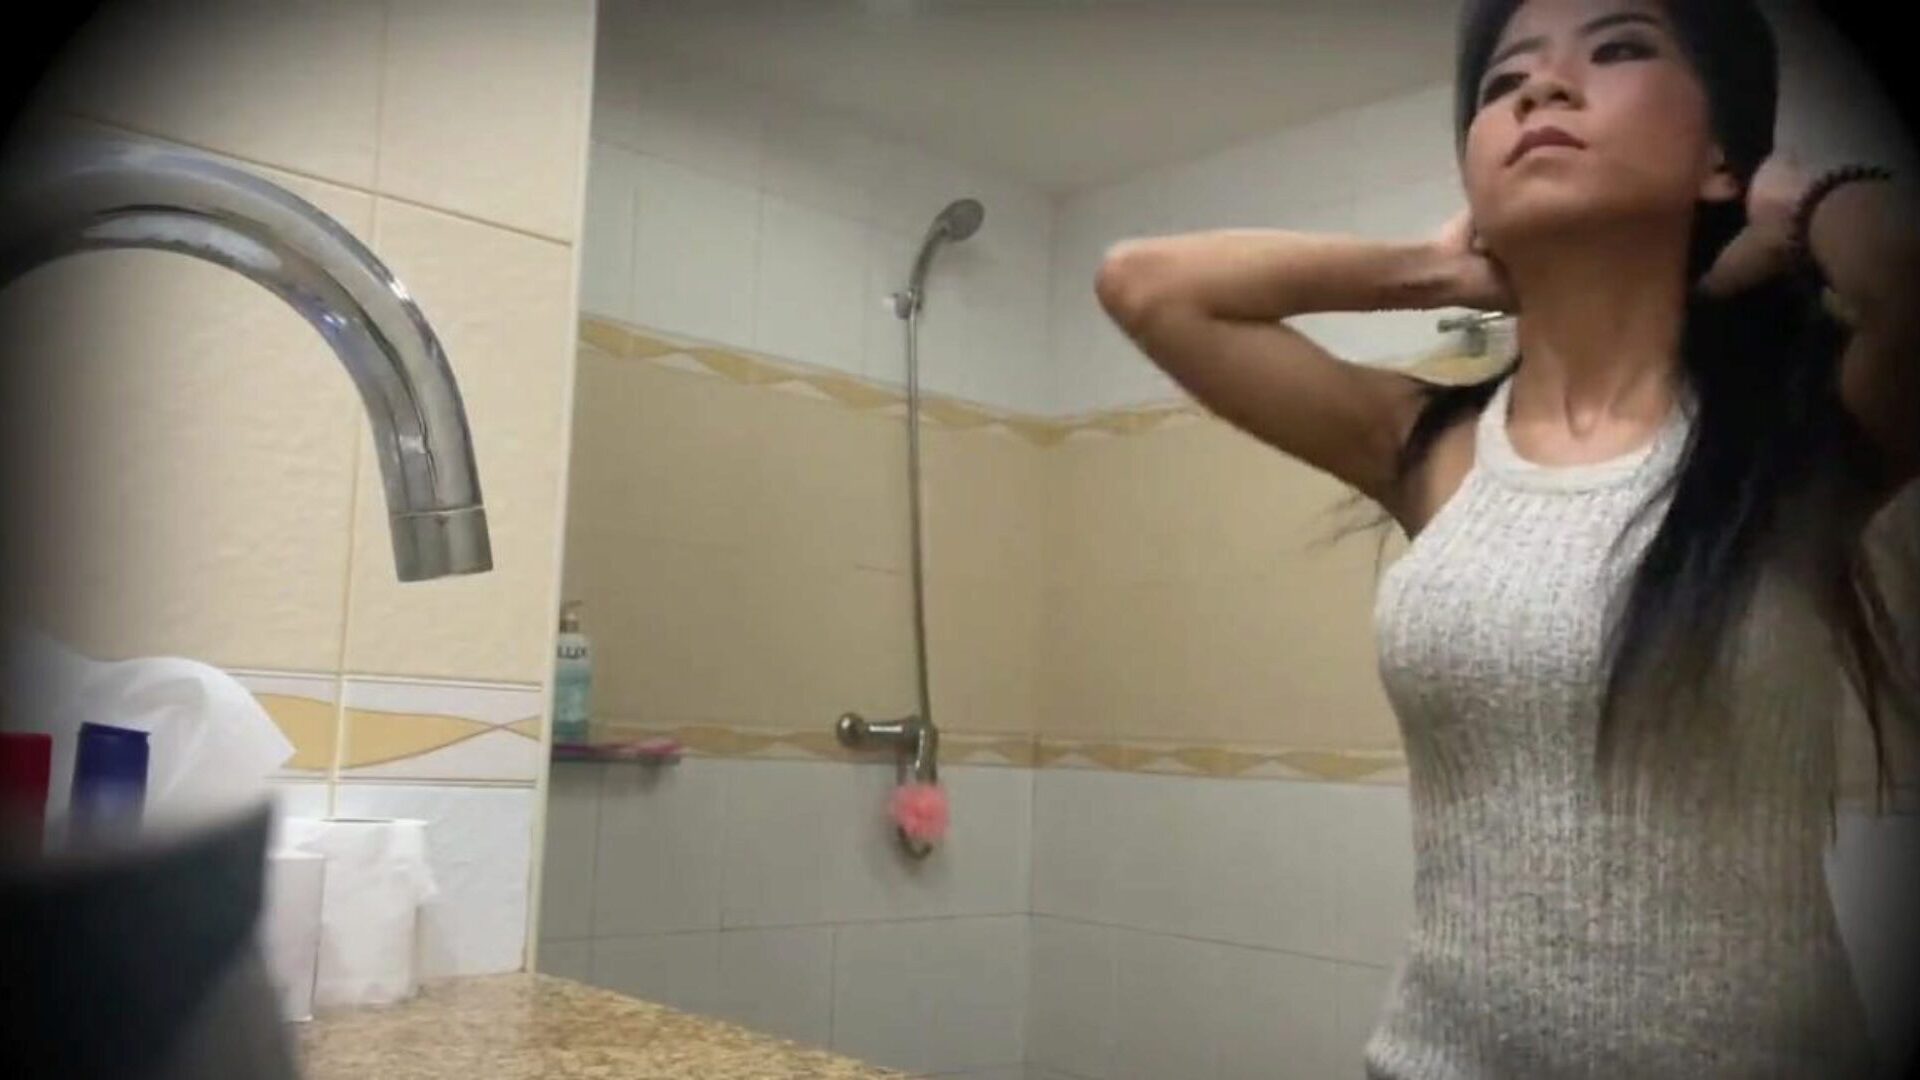 splendida prostituta thailandese scopata su telecamera nascosta: porno bf guarda splendida prostituta thailandese scopata su video telecamera nascosta su xhamster - la selezione definitiva di video tube porno gonzo hd per adolescenti asiatici gratis